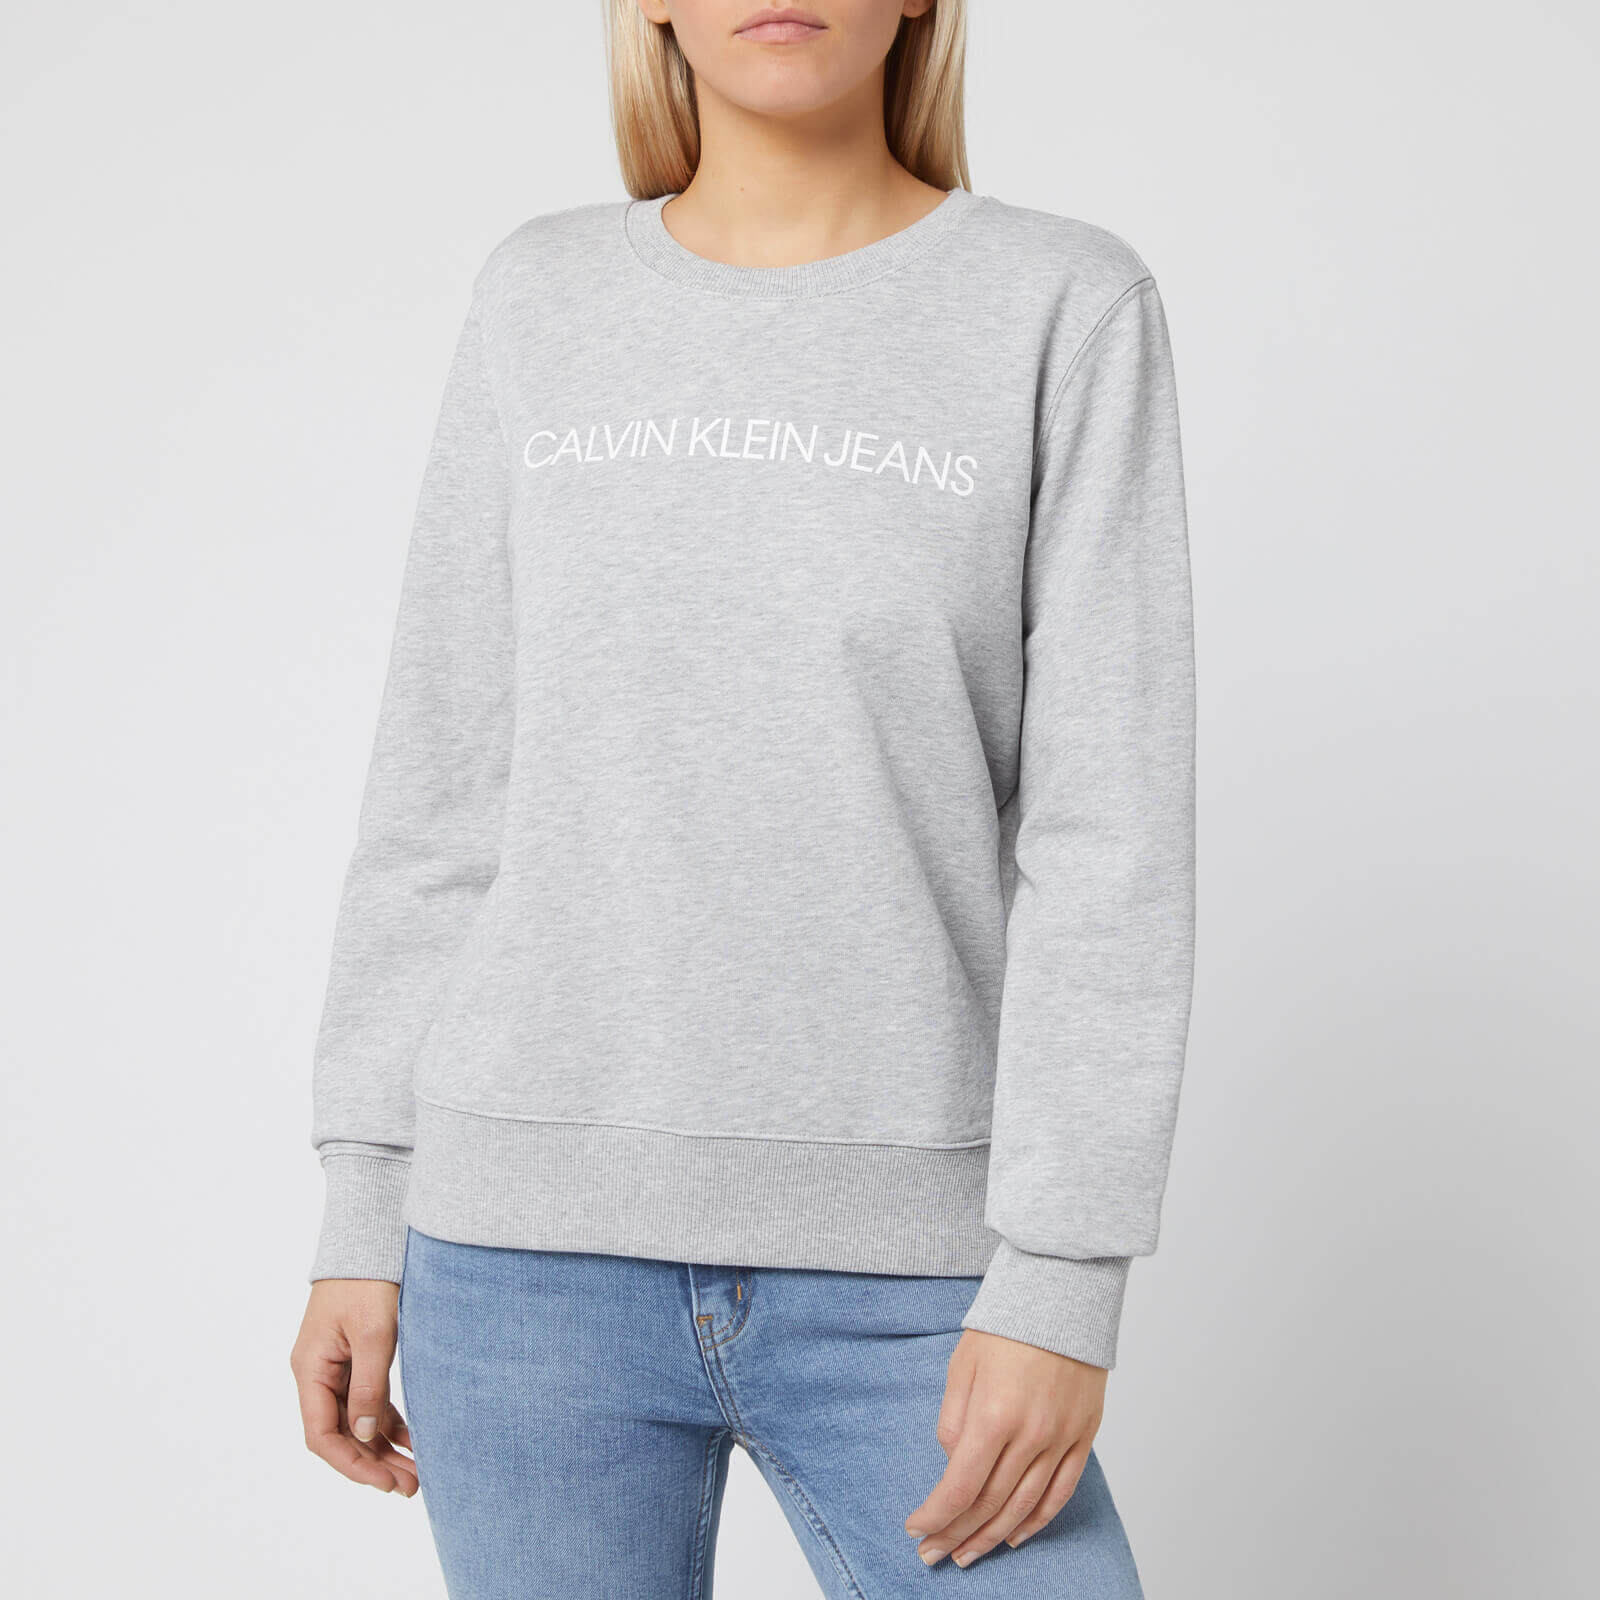 womens grey calvin klein sweatshirt